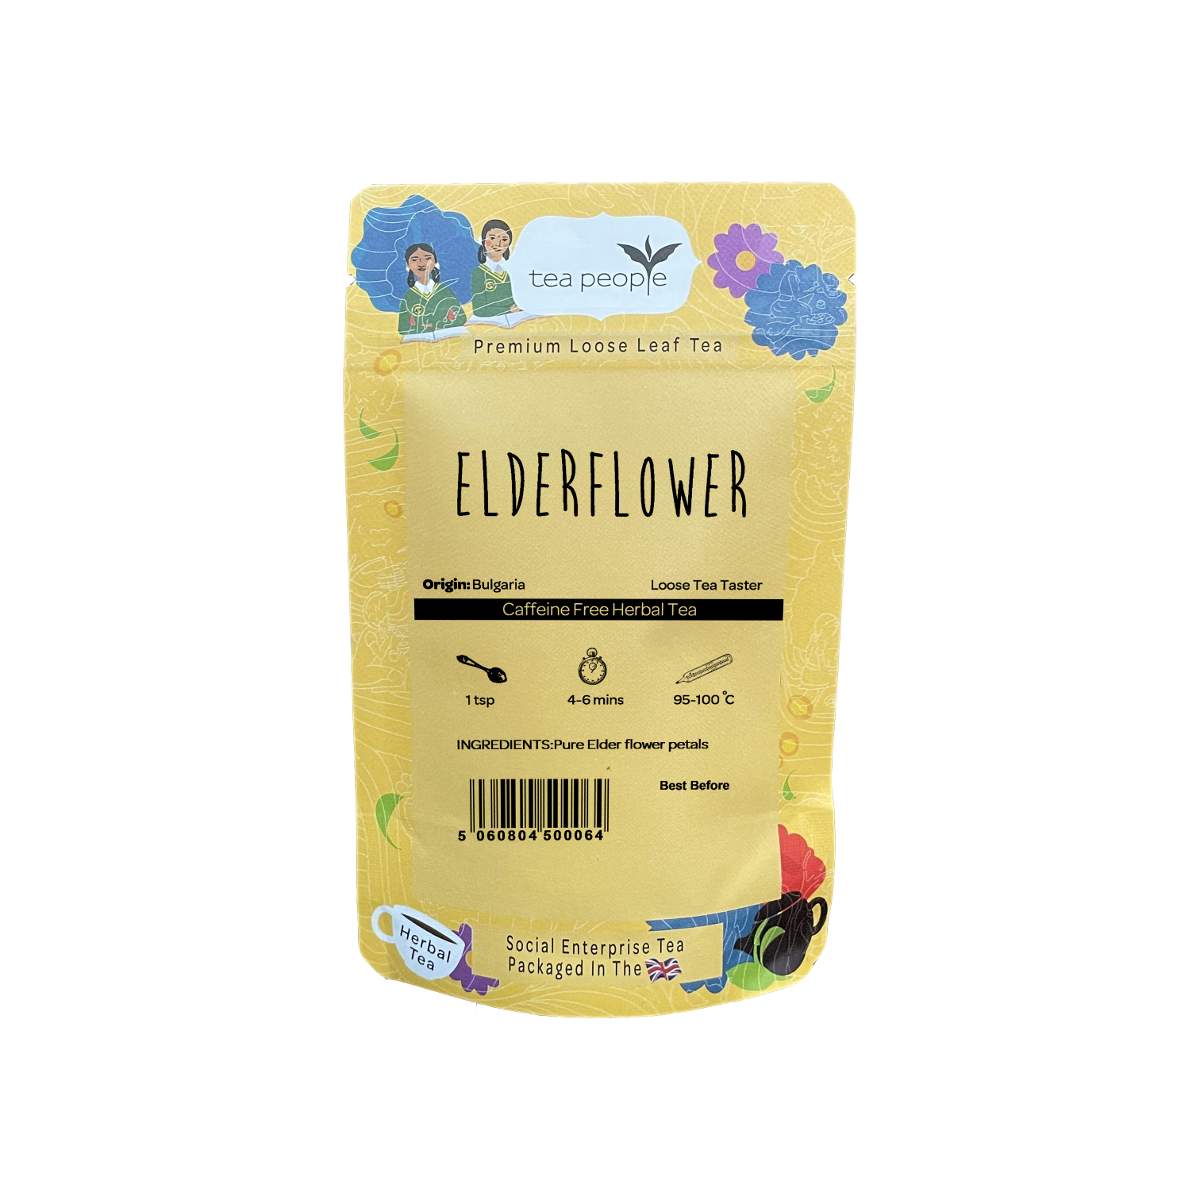 Elderflower - Loose Herbal Tea - Loose Tea Taster